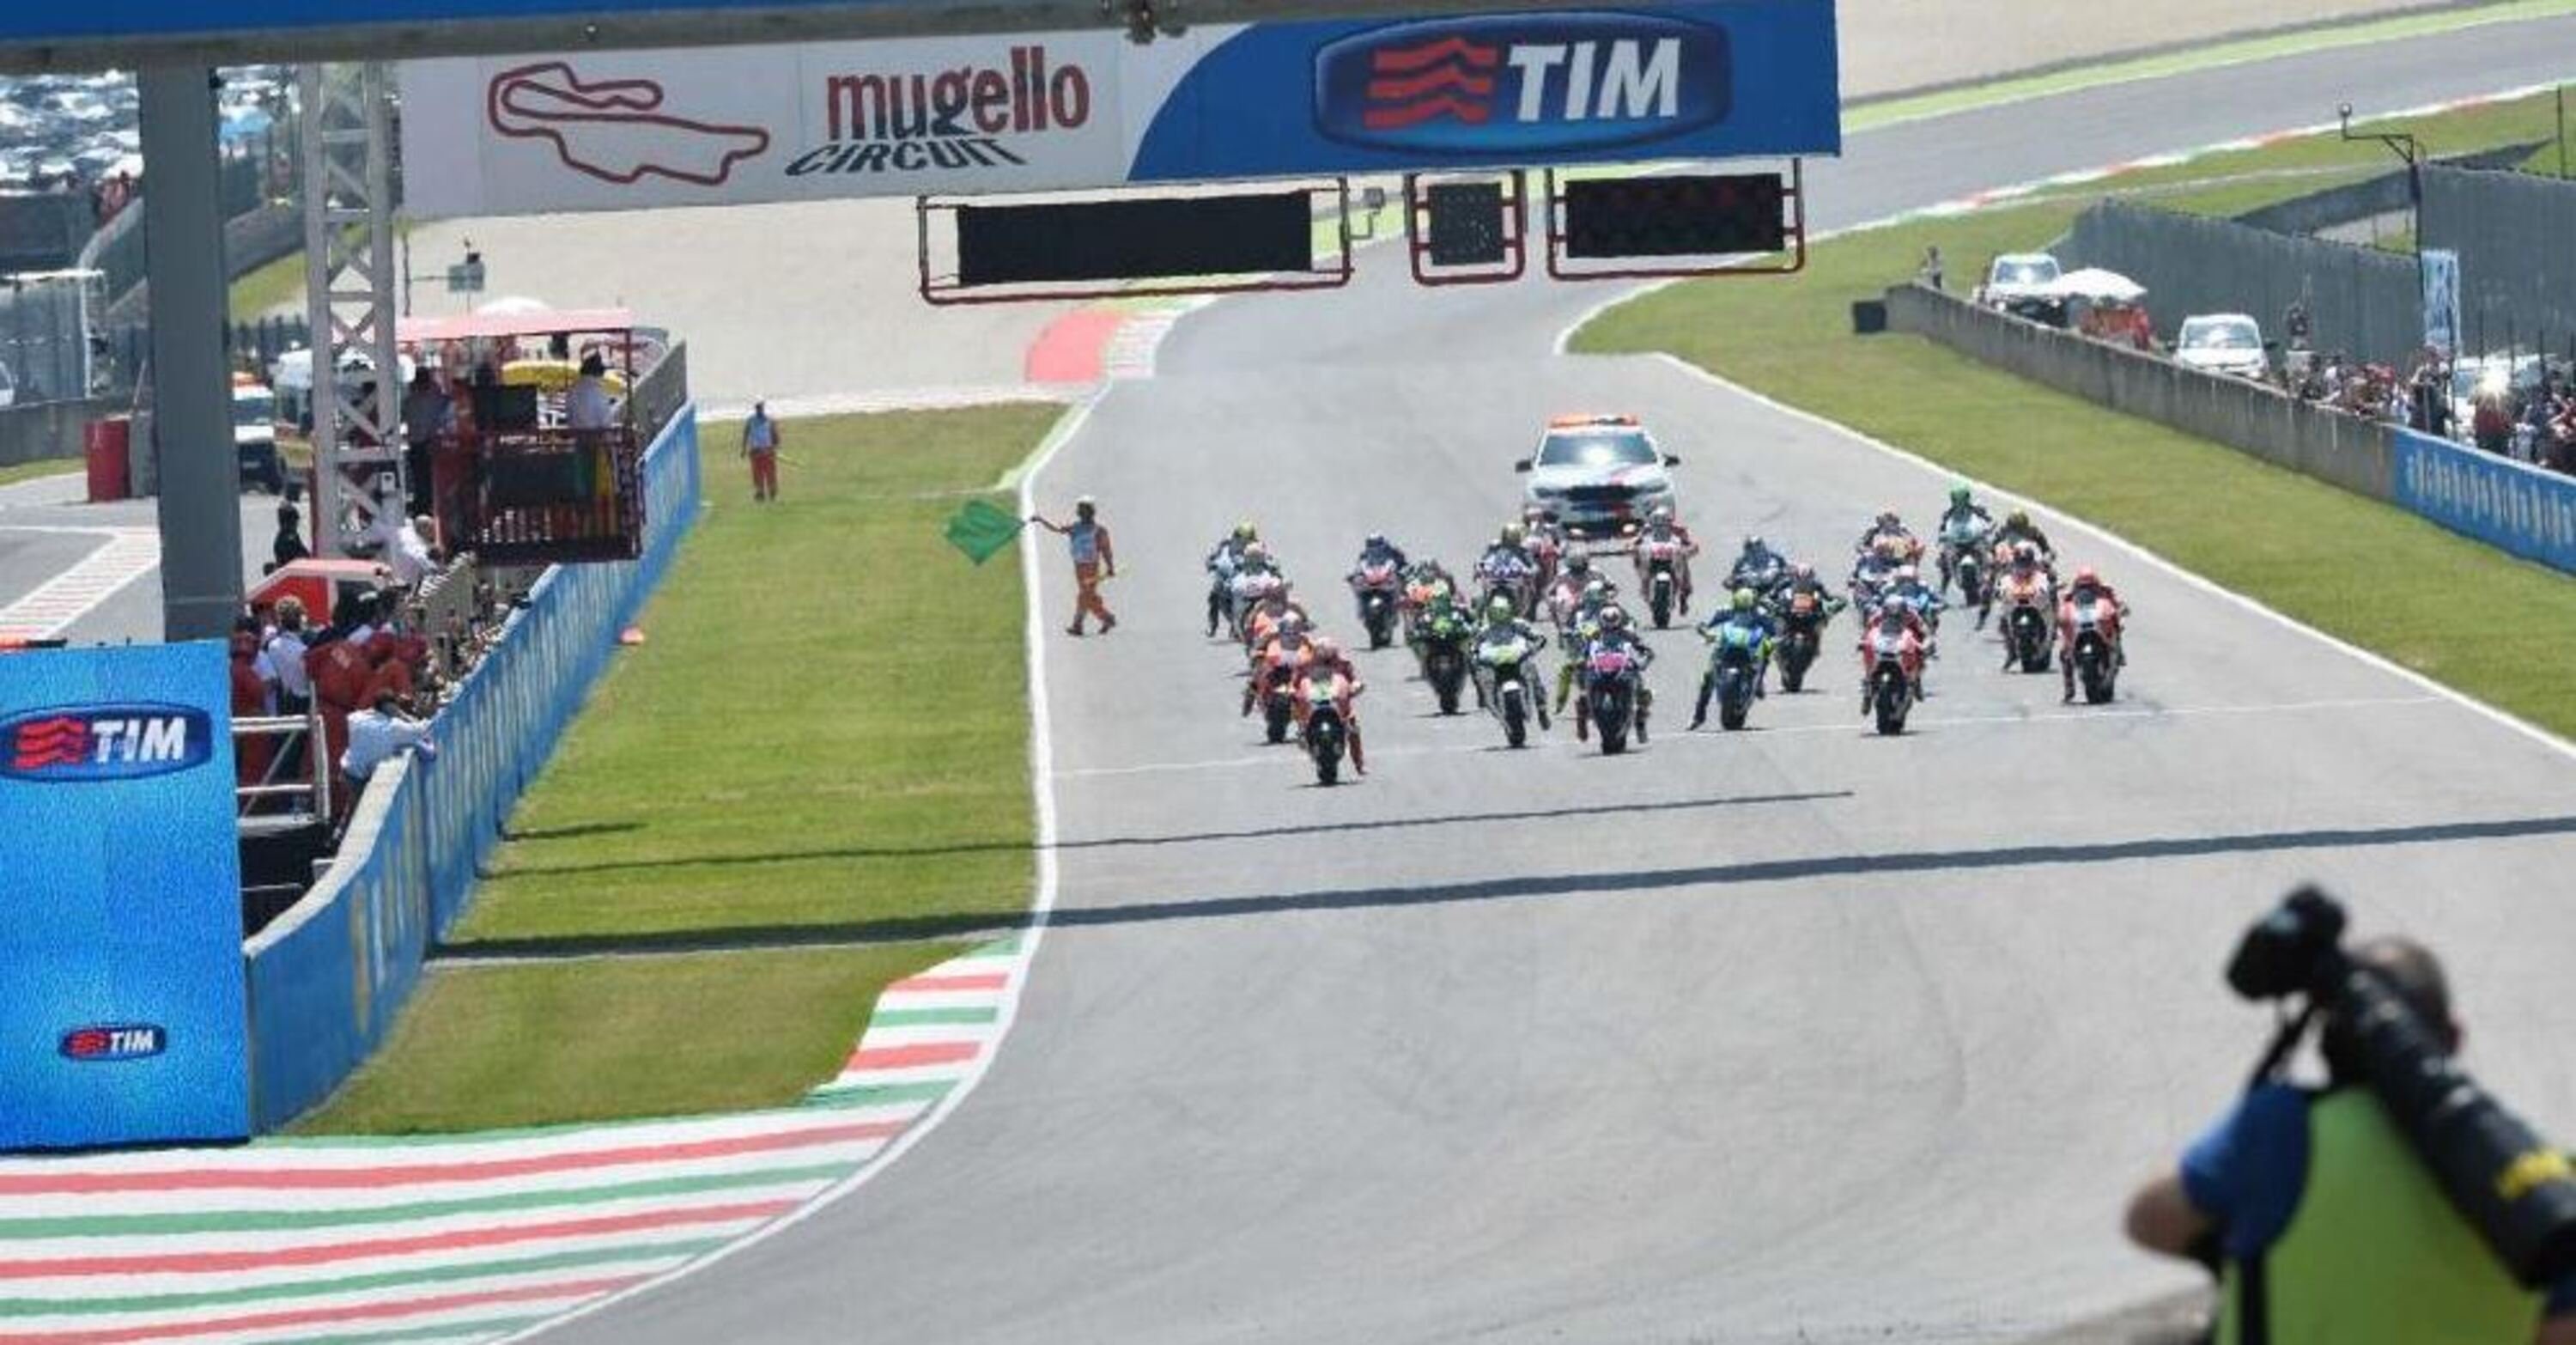 Chi vincer&agrave; la gara MotoGP al Mugello?